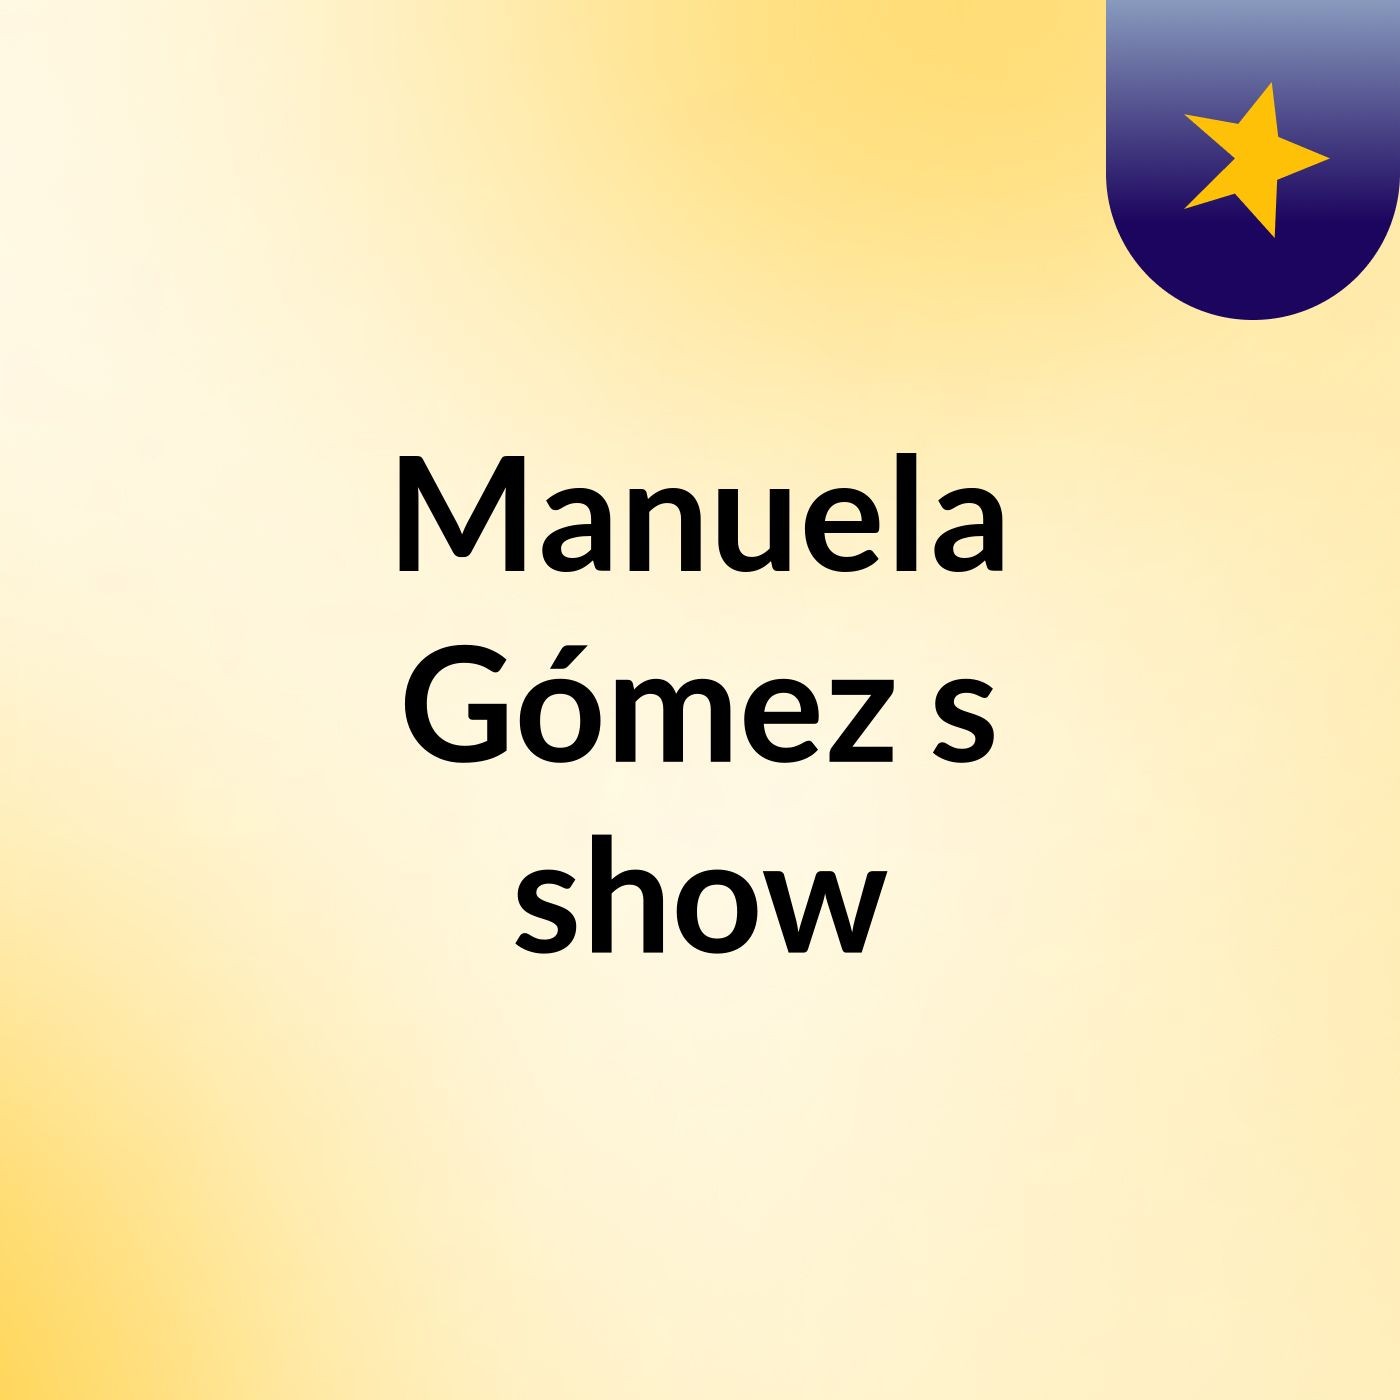 Manuela Gómez's show